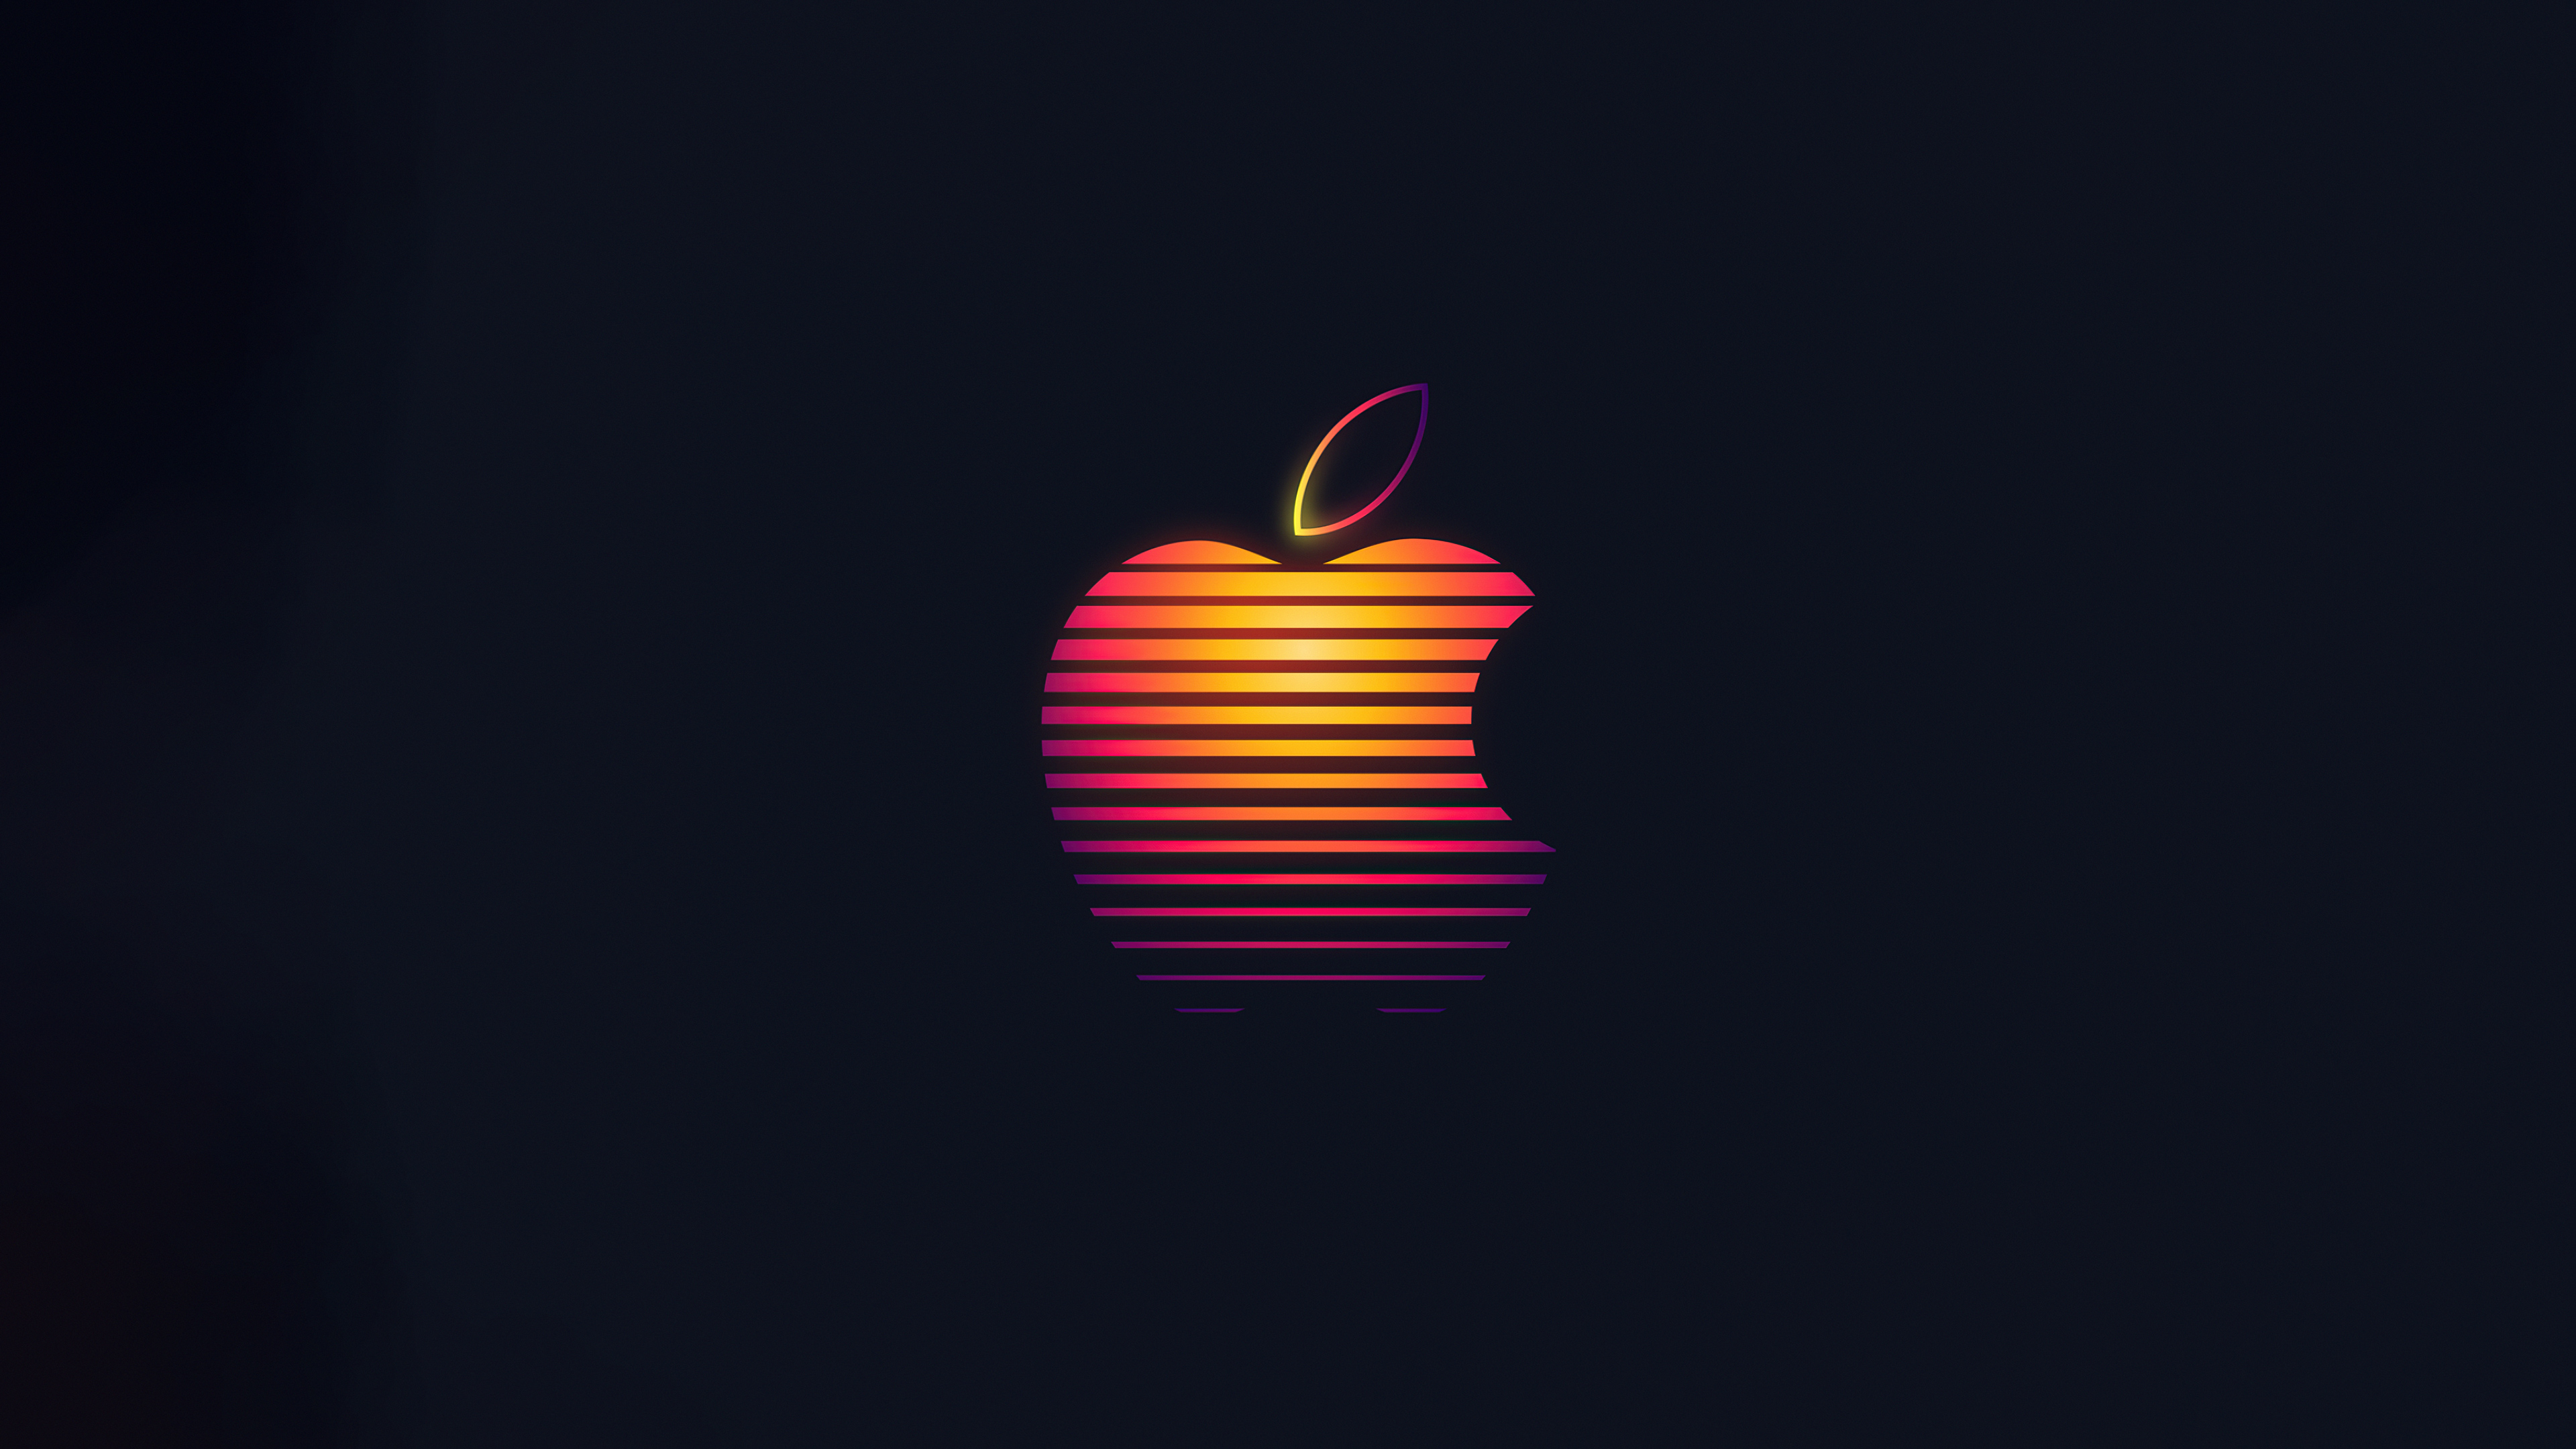 Apple Logo Desktop Wallpaper 4k Download Images